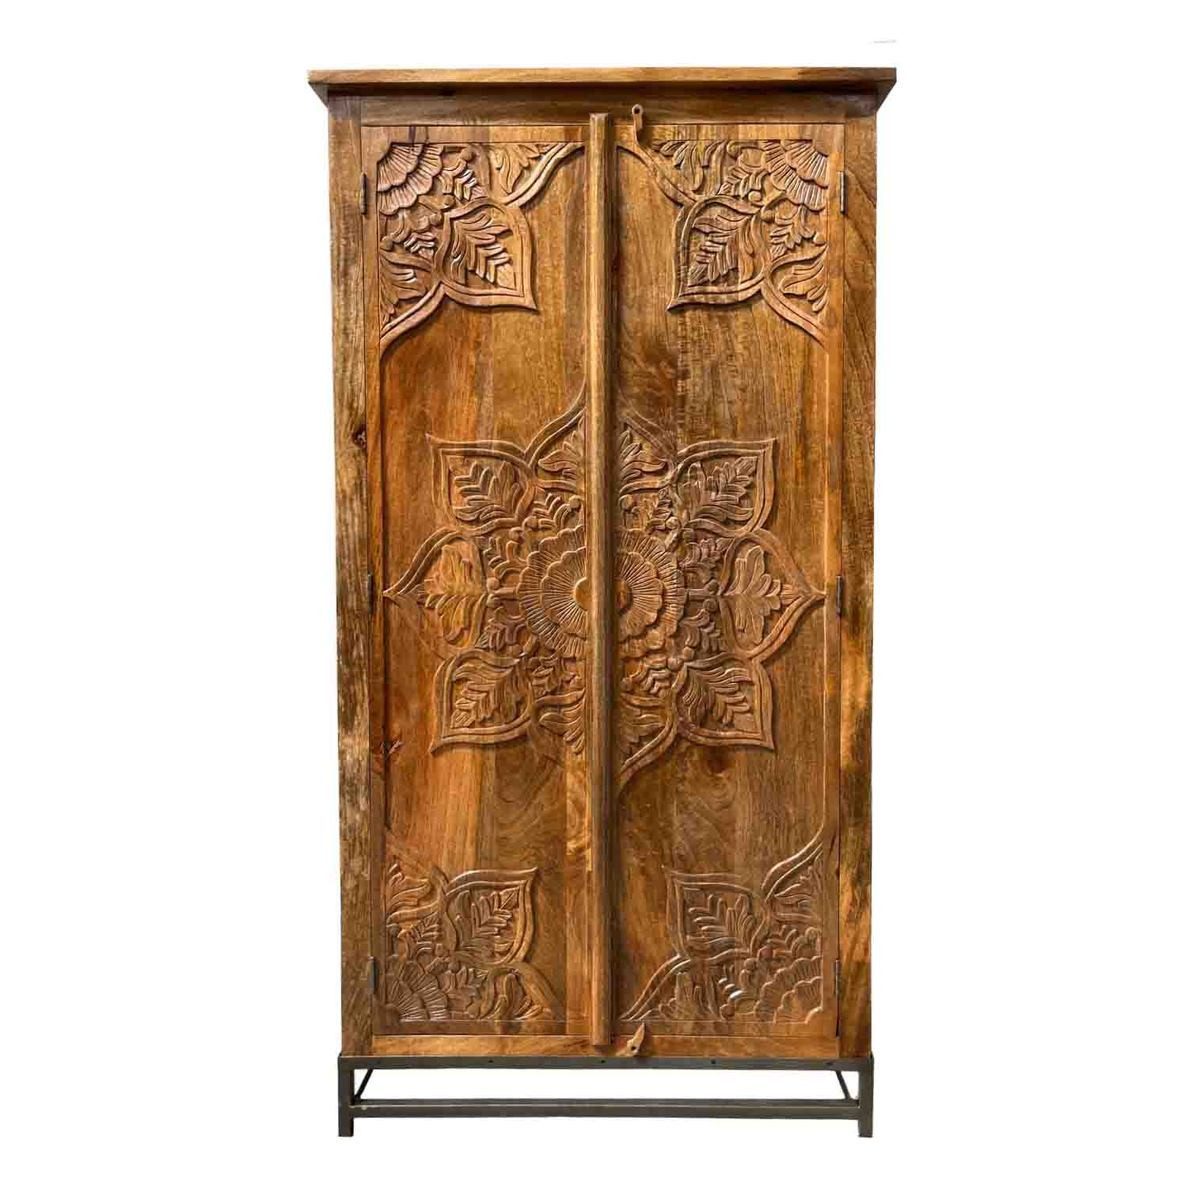 Oriental Galerie Mehrzweckschrank Natur Schrank Jaspal Indien 190cm Wohnzimmerschrank Antik, Massivholz, mit Stahlgestell